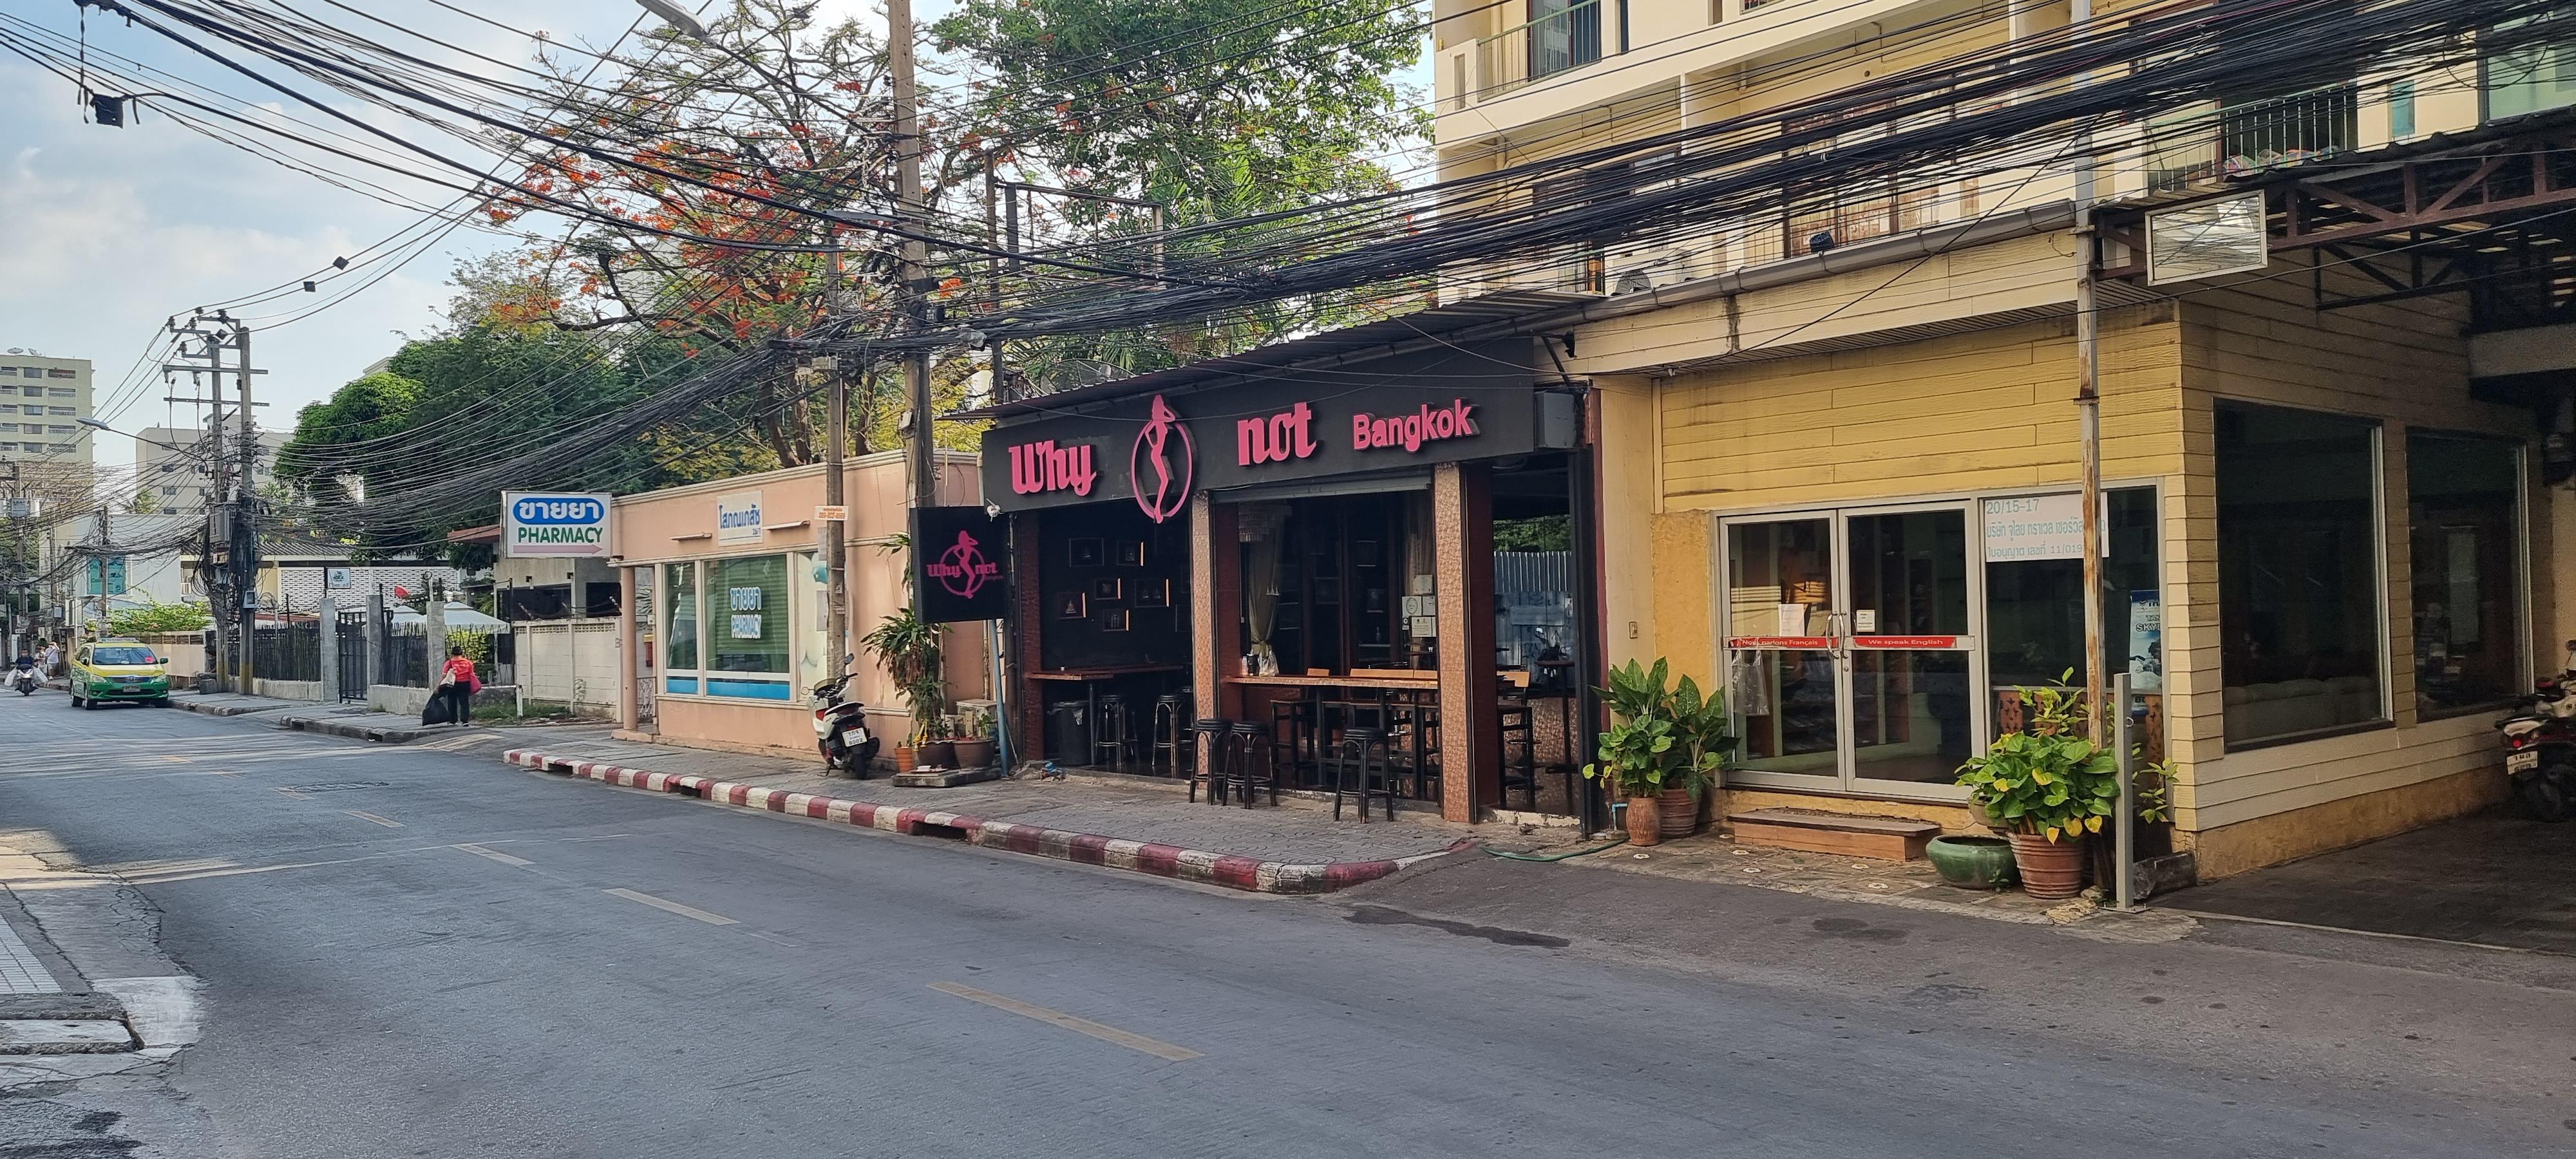 Why Not Bangkok bar